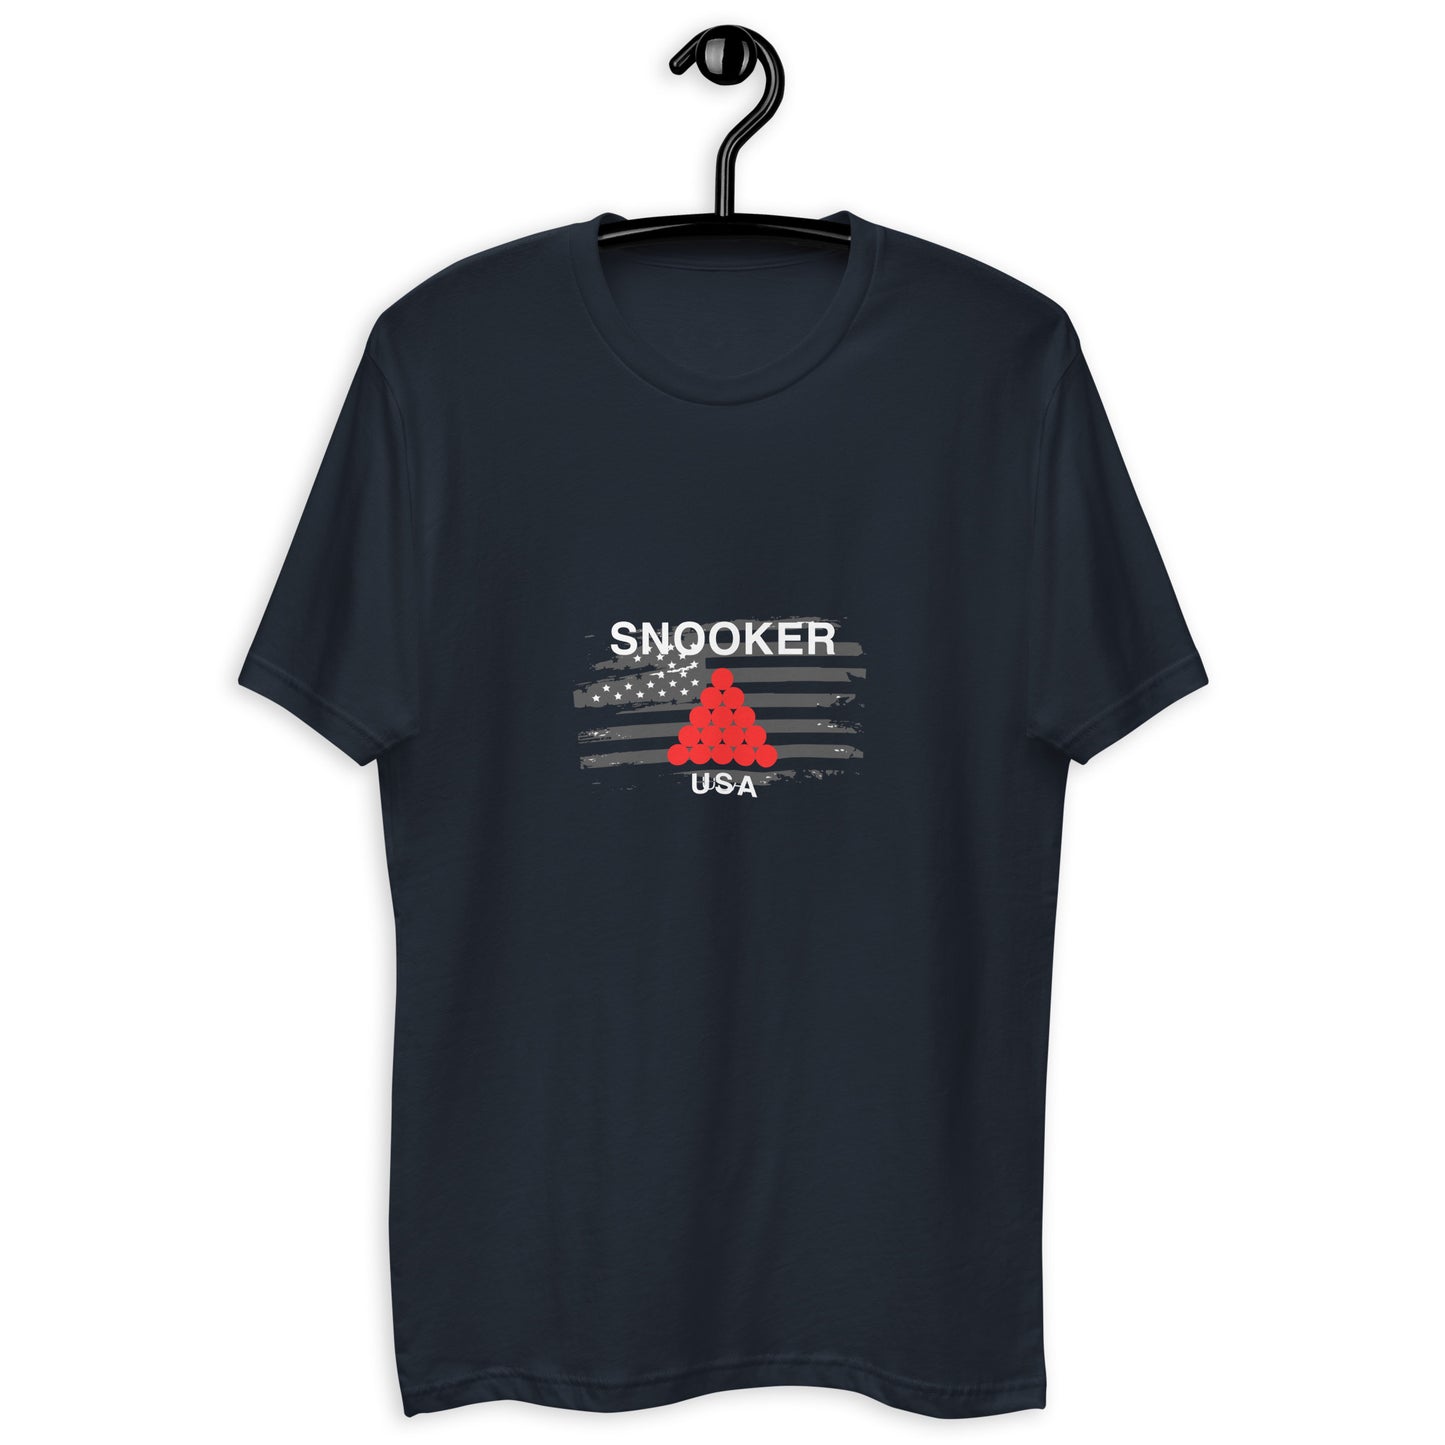 Snooker USA - Short Sleeve T-shirt